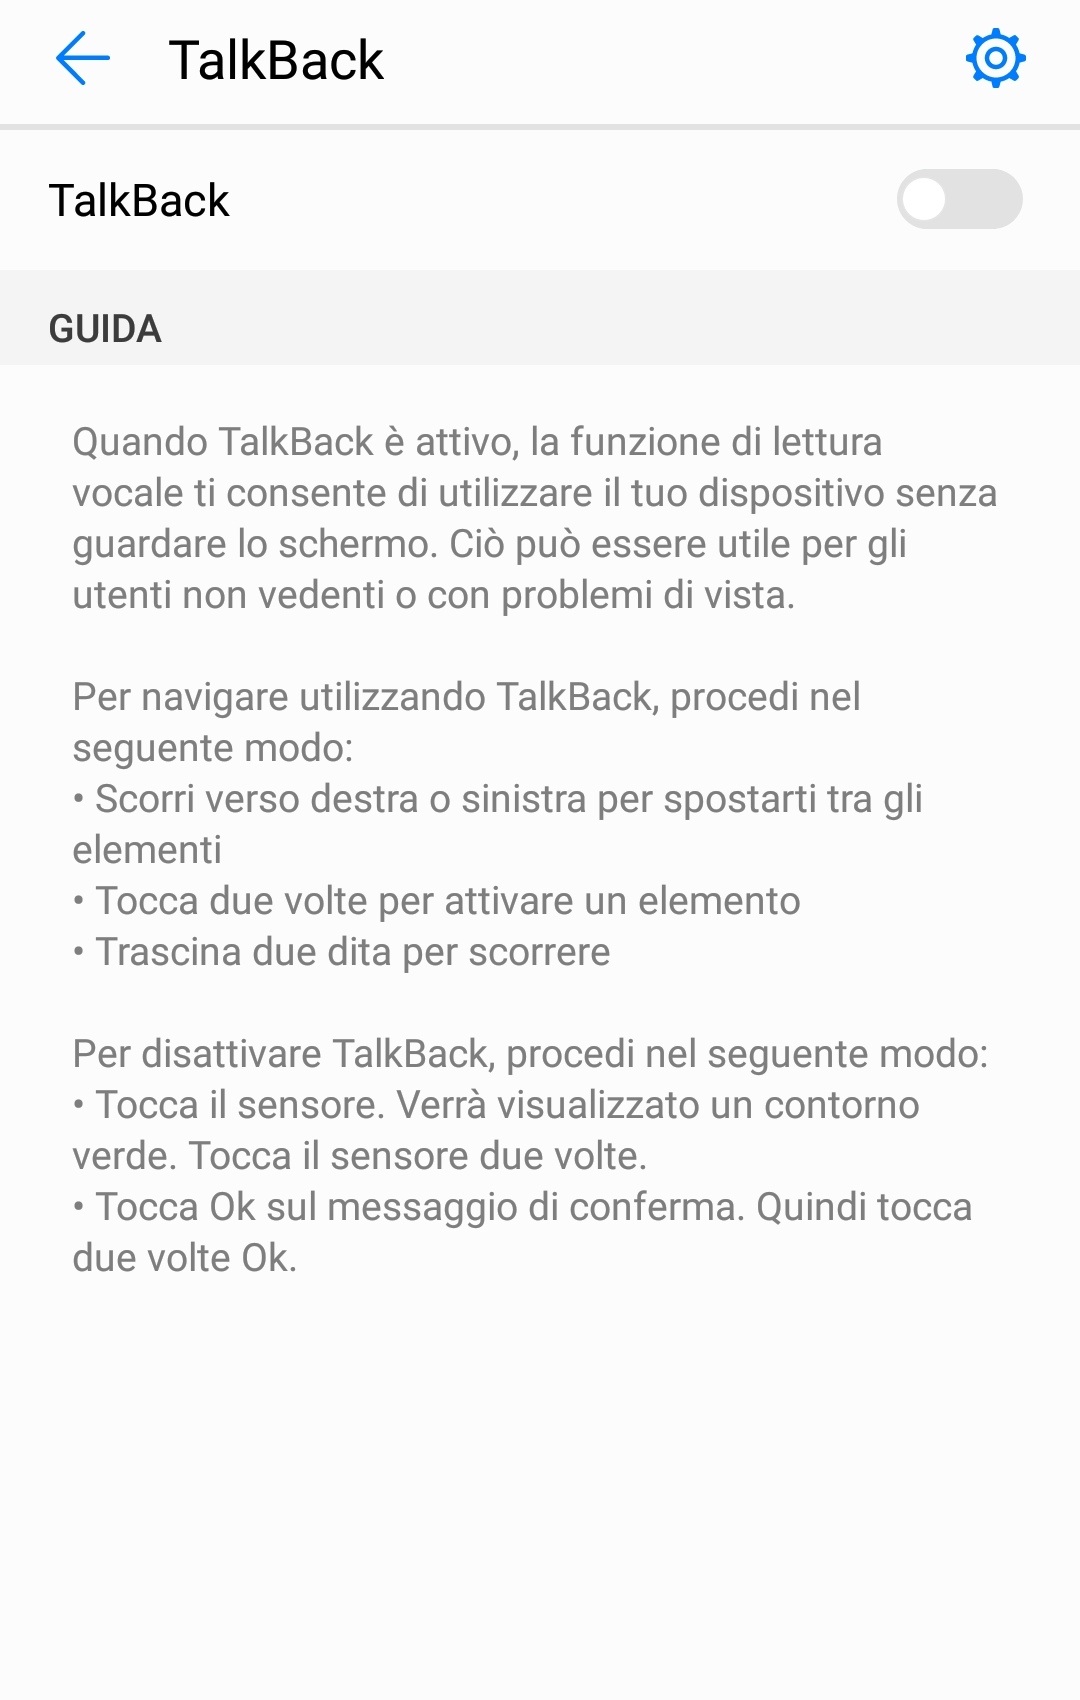 Disattivare TalkBack